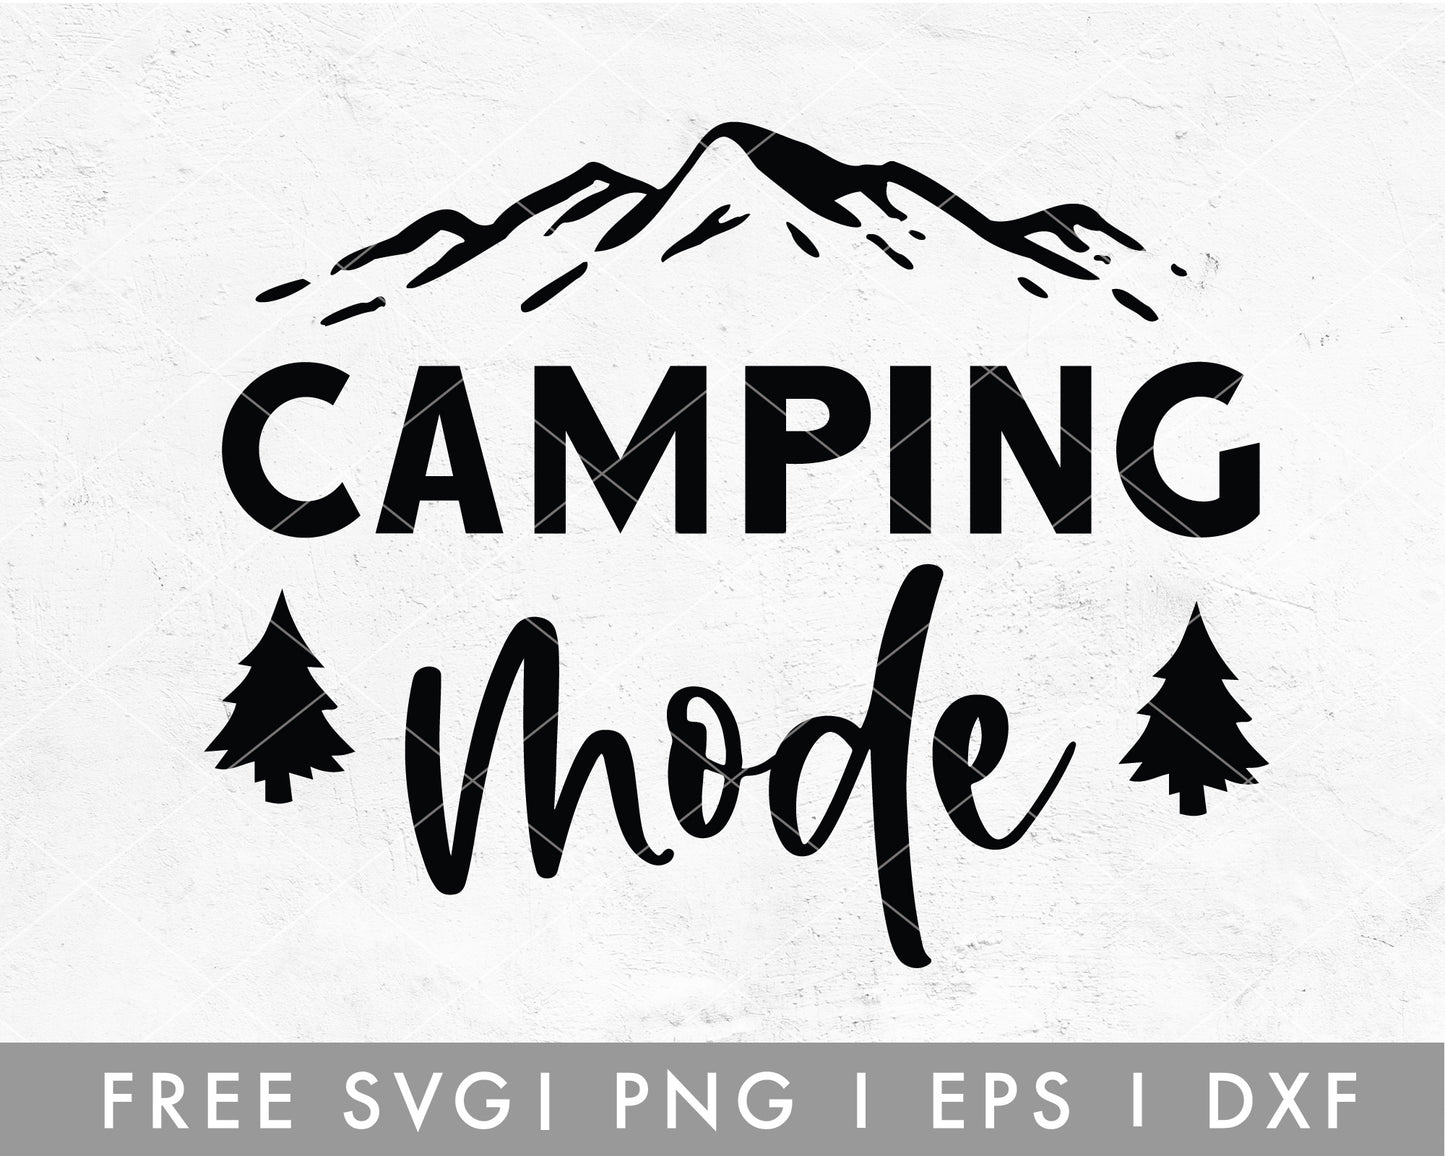 FREE Camping Mode SVG